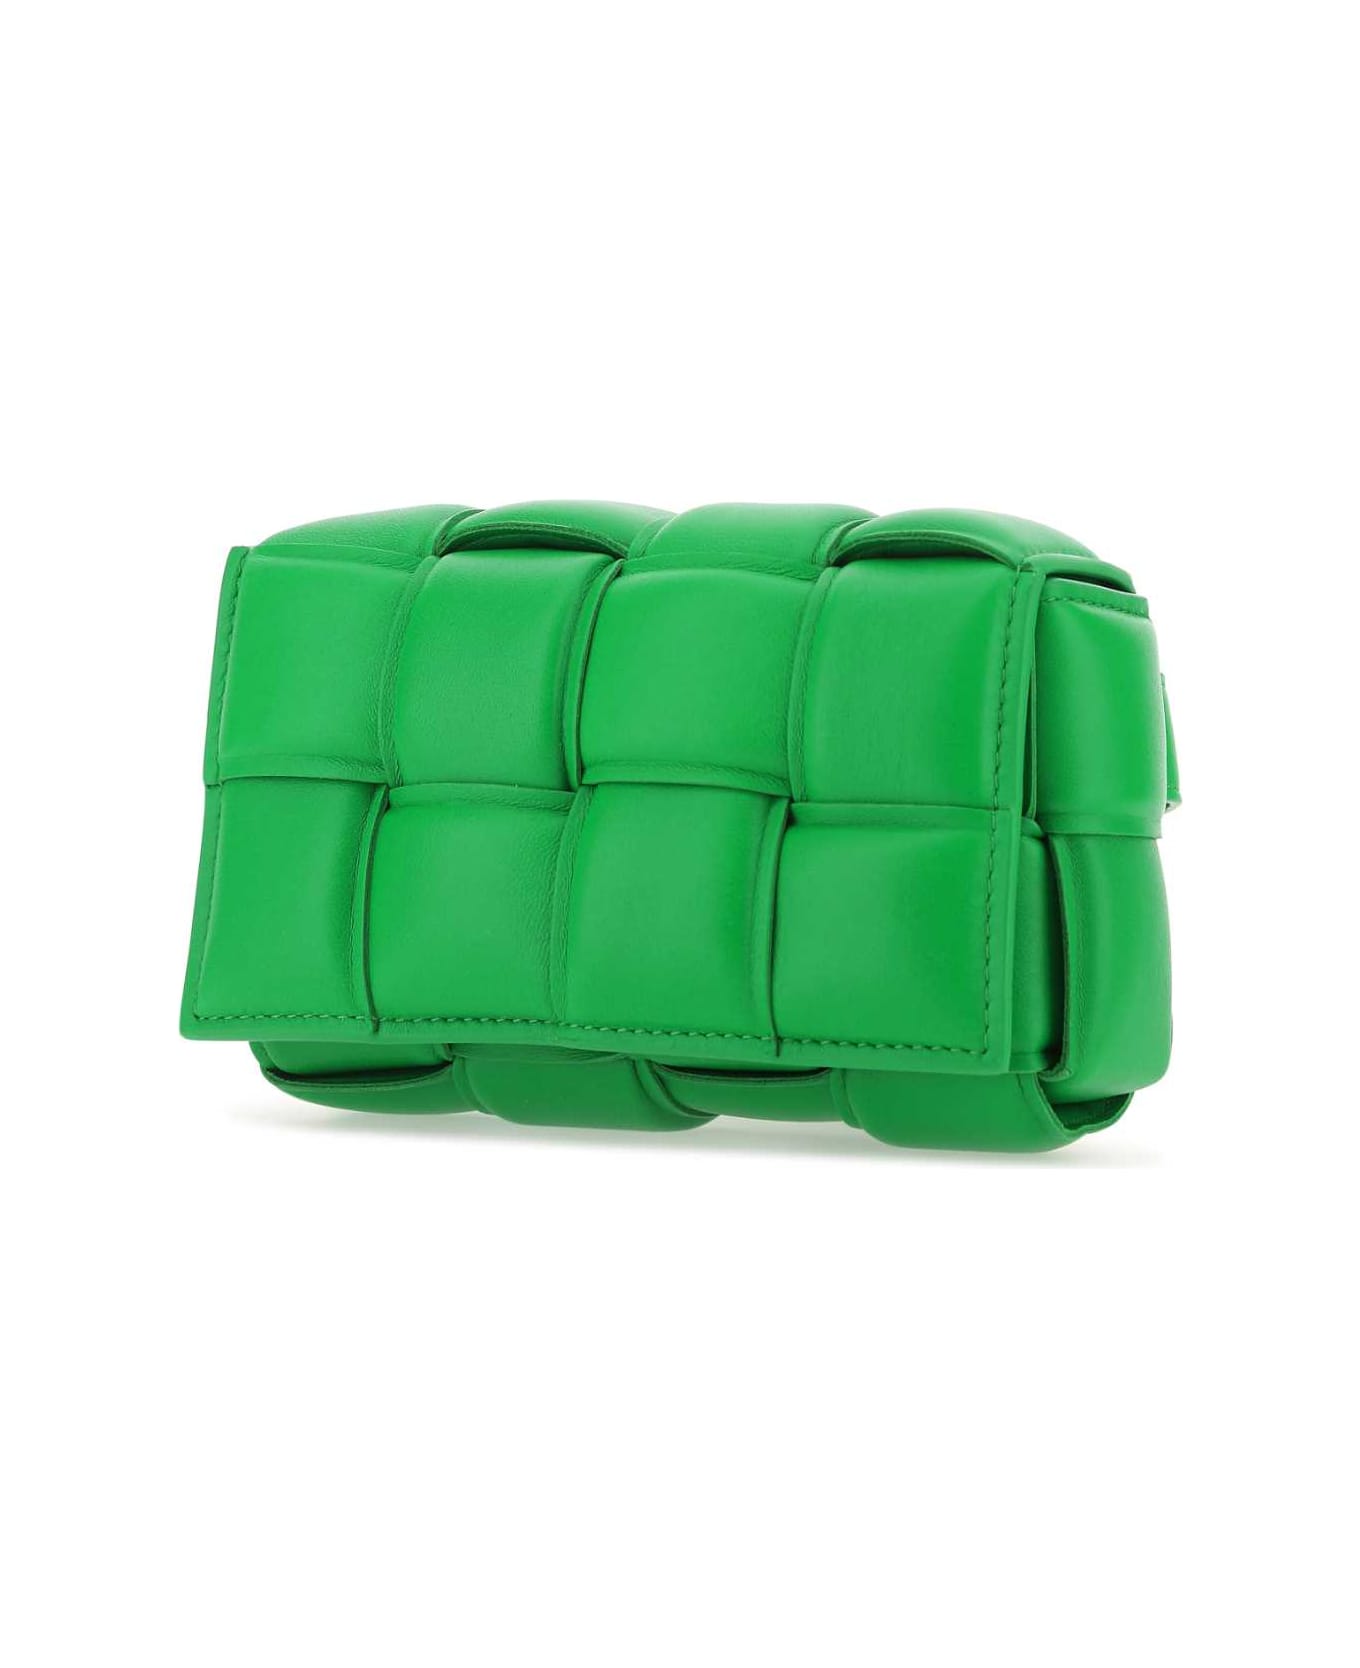 Bottega Veneta Grass Green Nappa Leather Padded Cassette Belt Bag - 3724